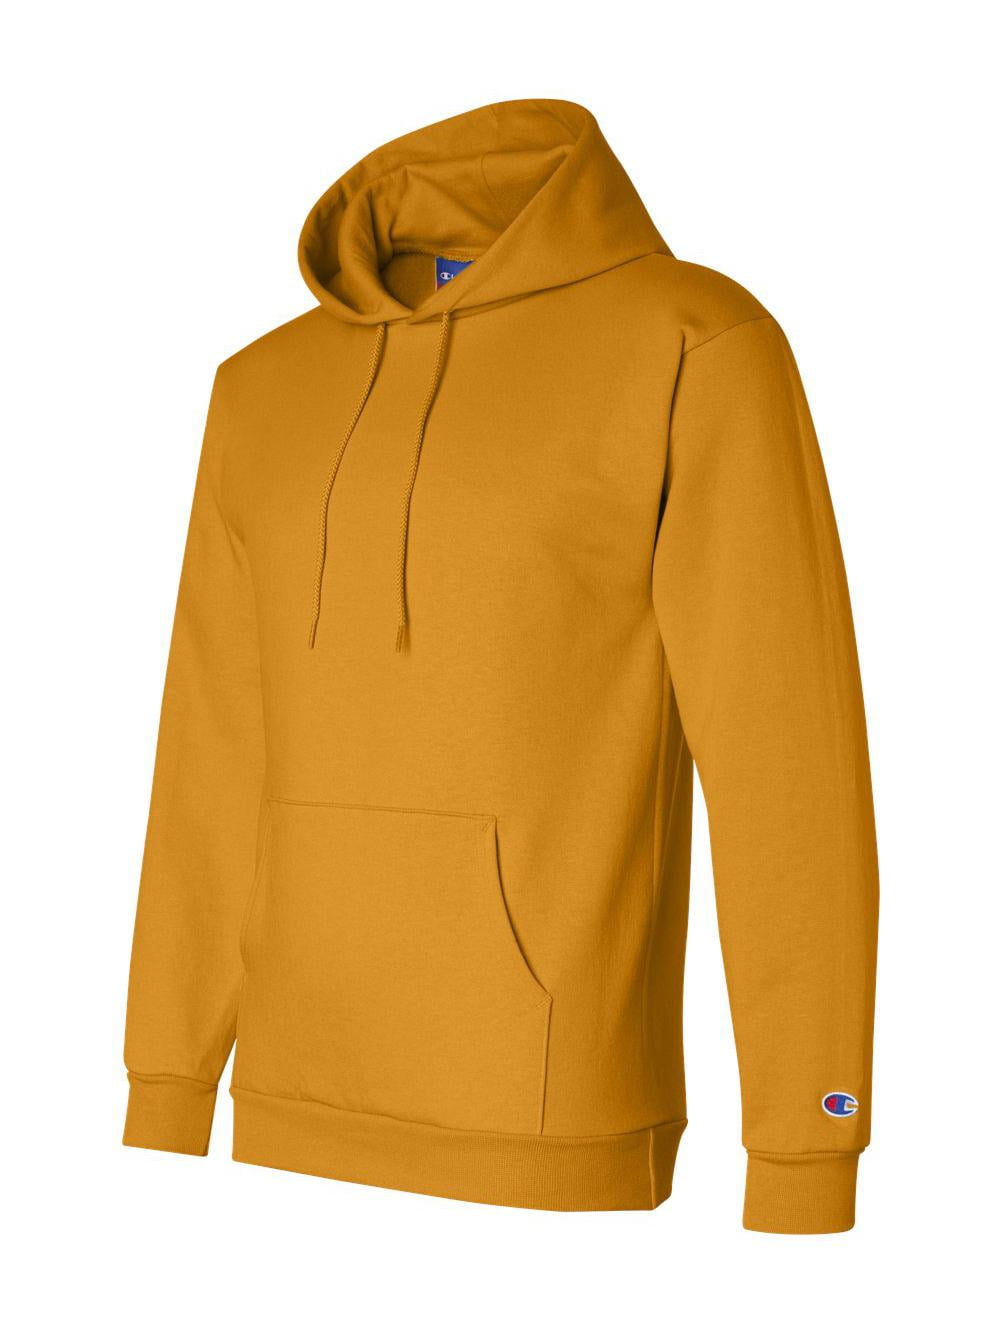 Men's Double Dry Action Pullover Hood, C/Gold - S - Walmart.com